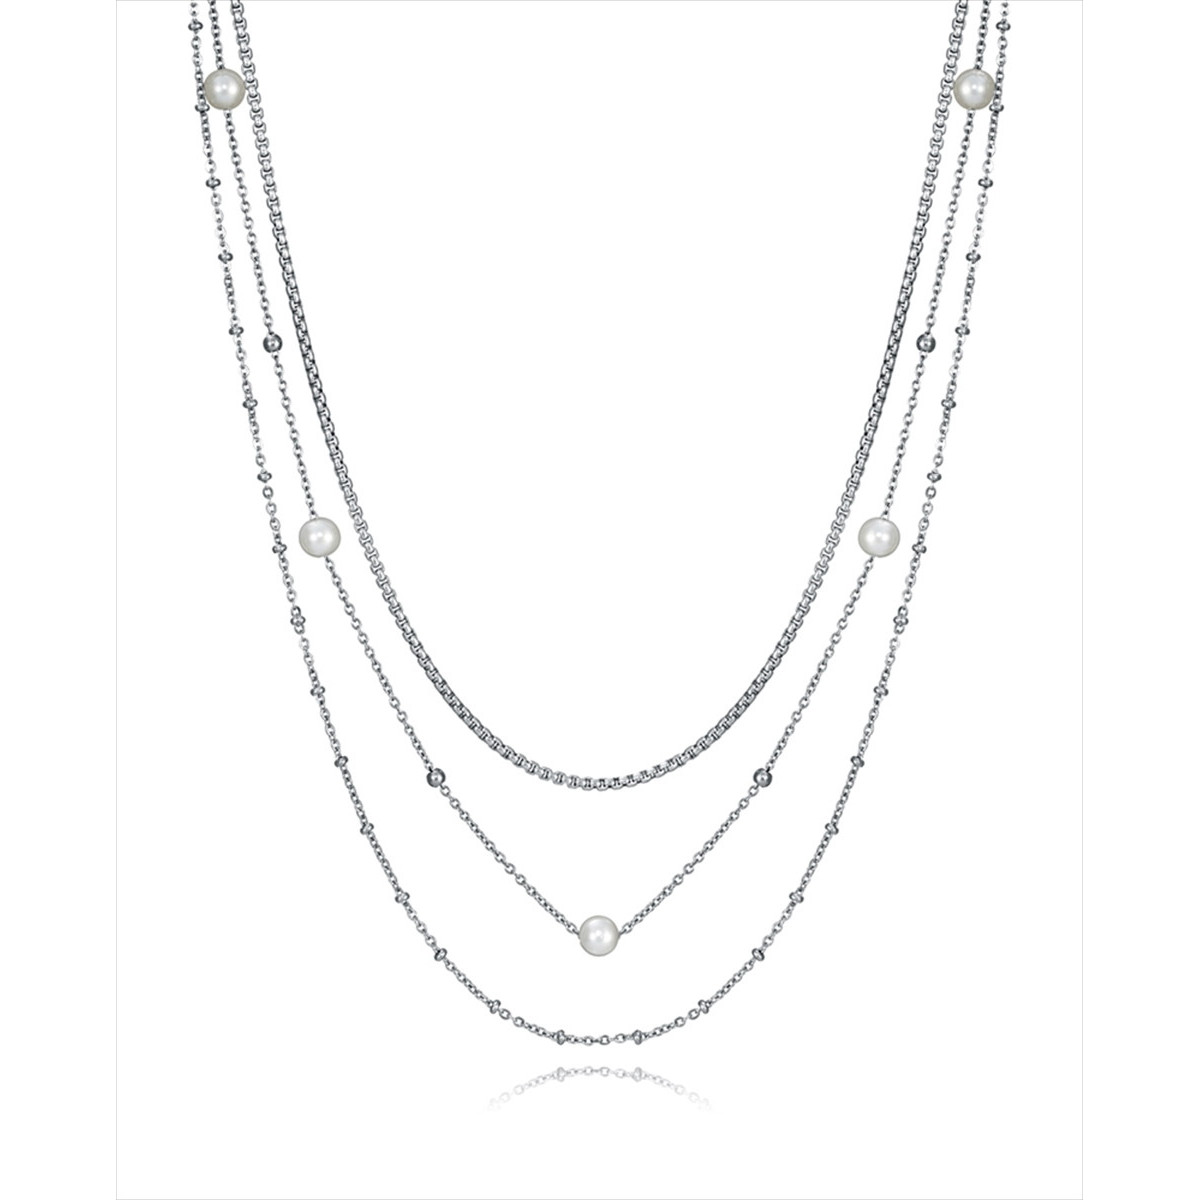 Collar triple de acero con la cadena interior de eslabones cuadrados de 2 mm, la cadena intermedia de 1,5 mm cpn 5 perlas sintét